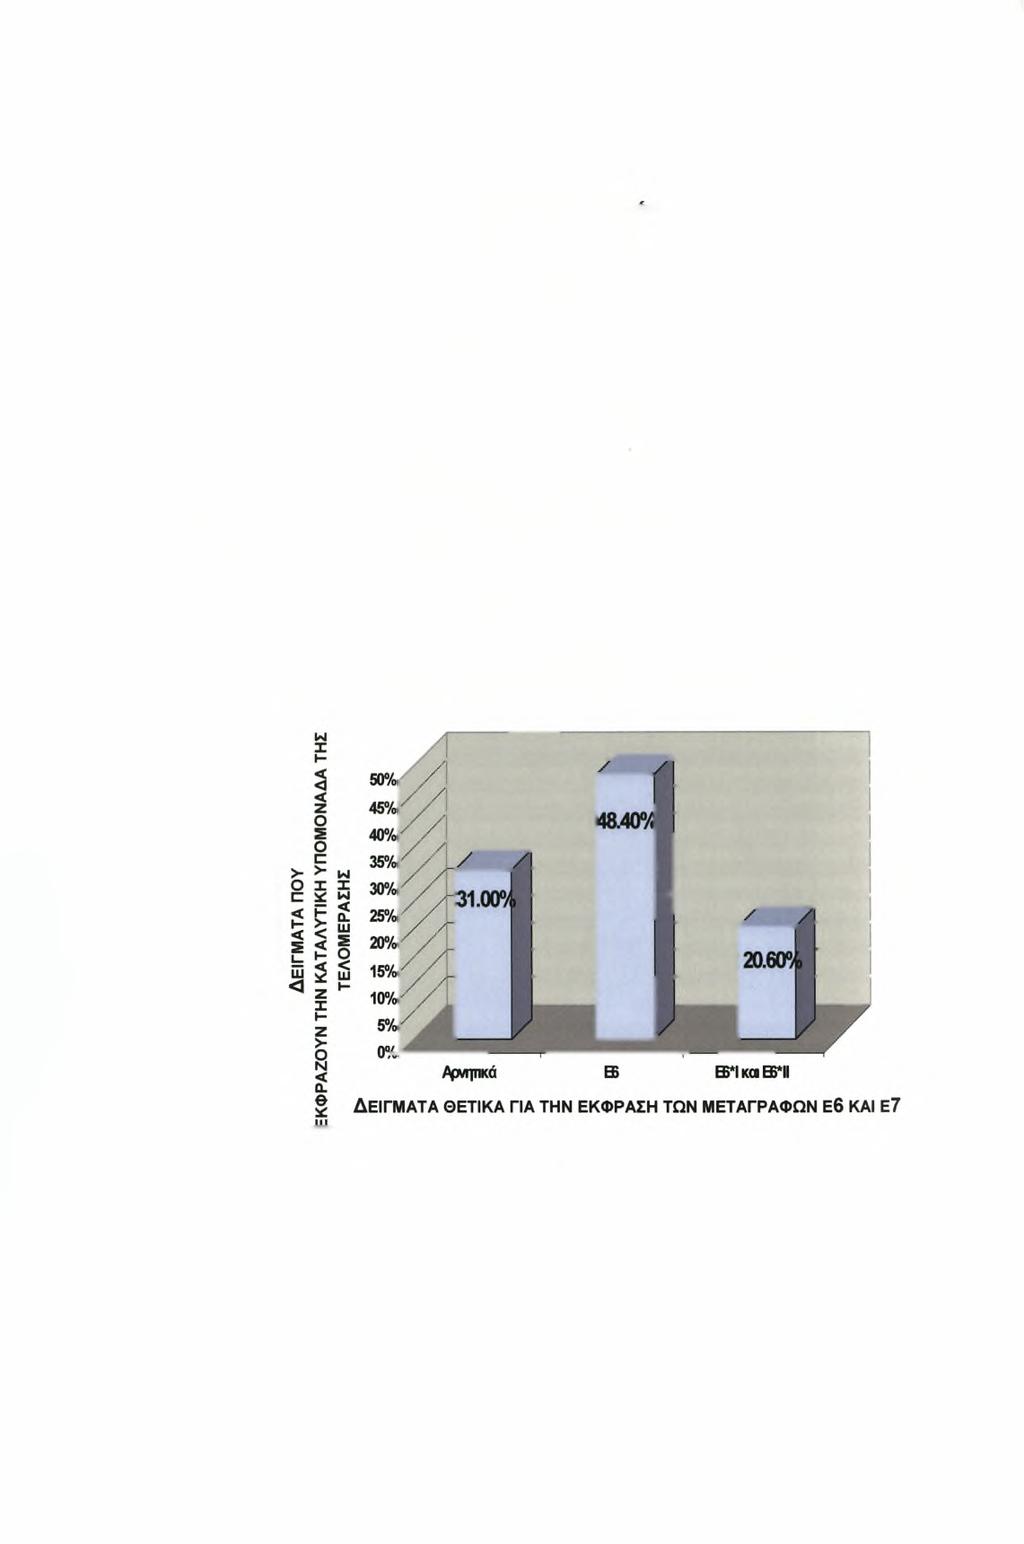 2.2.17 Ανίχνευση των Ε6 και Ε7 mrna μεταγραφών του ιού των ανθρώπινων θηλωμάτων (HPV) με την τεχνική της αλυσιδωτής αντίδρασης της πολυμεράσης (RT-PCR) και συσχέτιση με τον ποσοτικό προσδιορισμό του